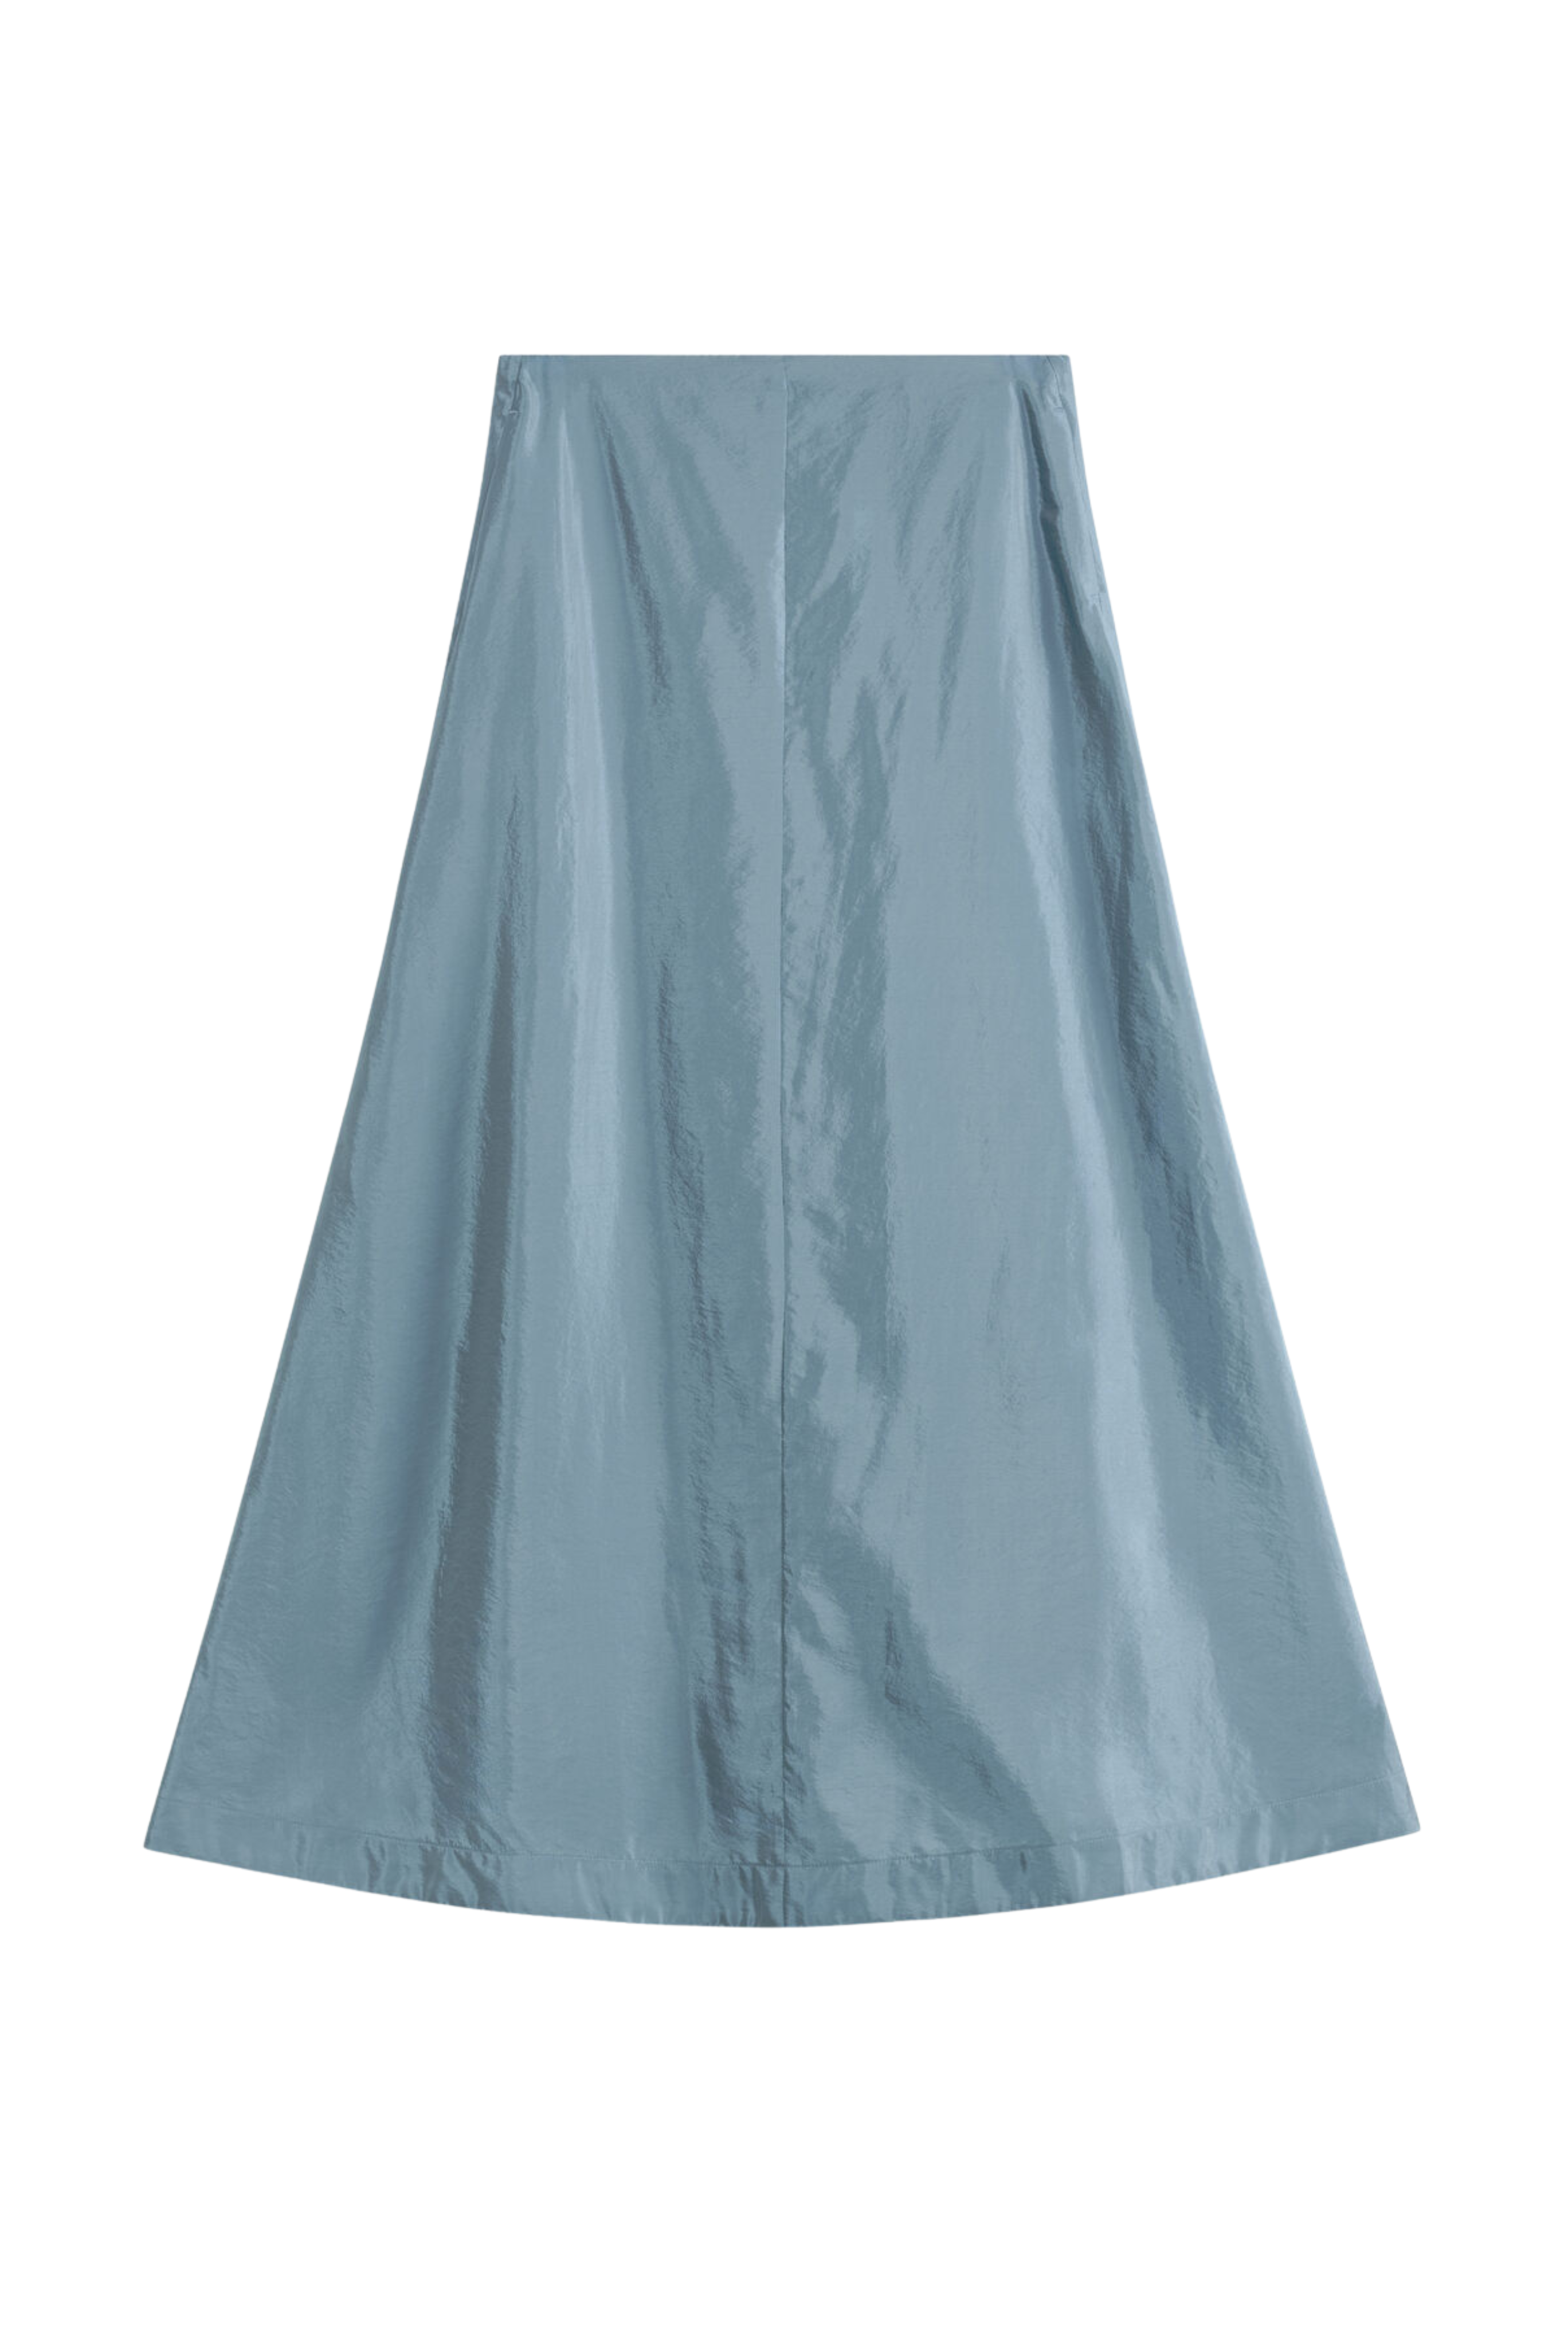 BY MALENE BIRGER Blue Isoldas Midi Skirt